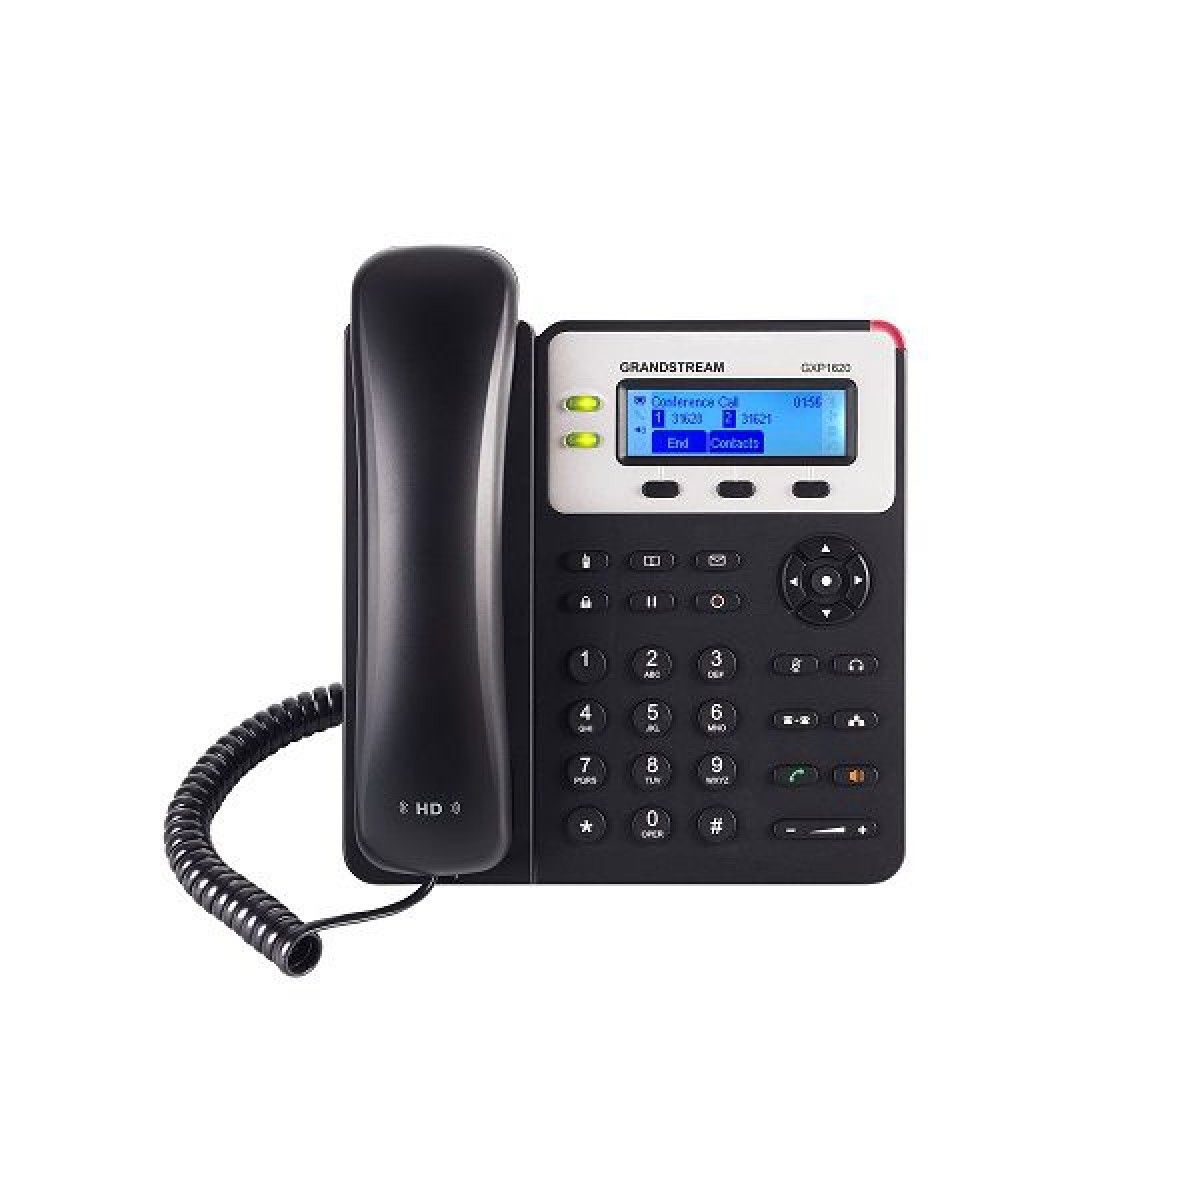 تلفن تحت شبکه گرنداستریم مدل GXP1625